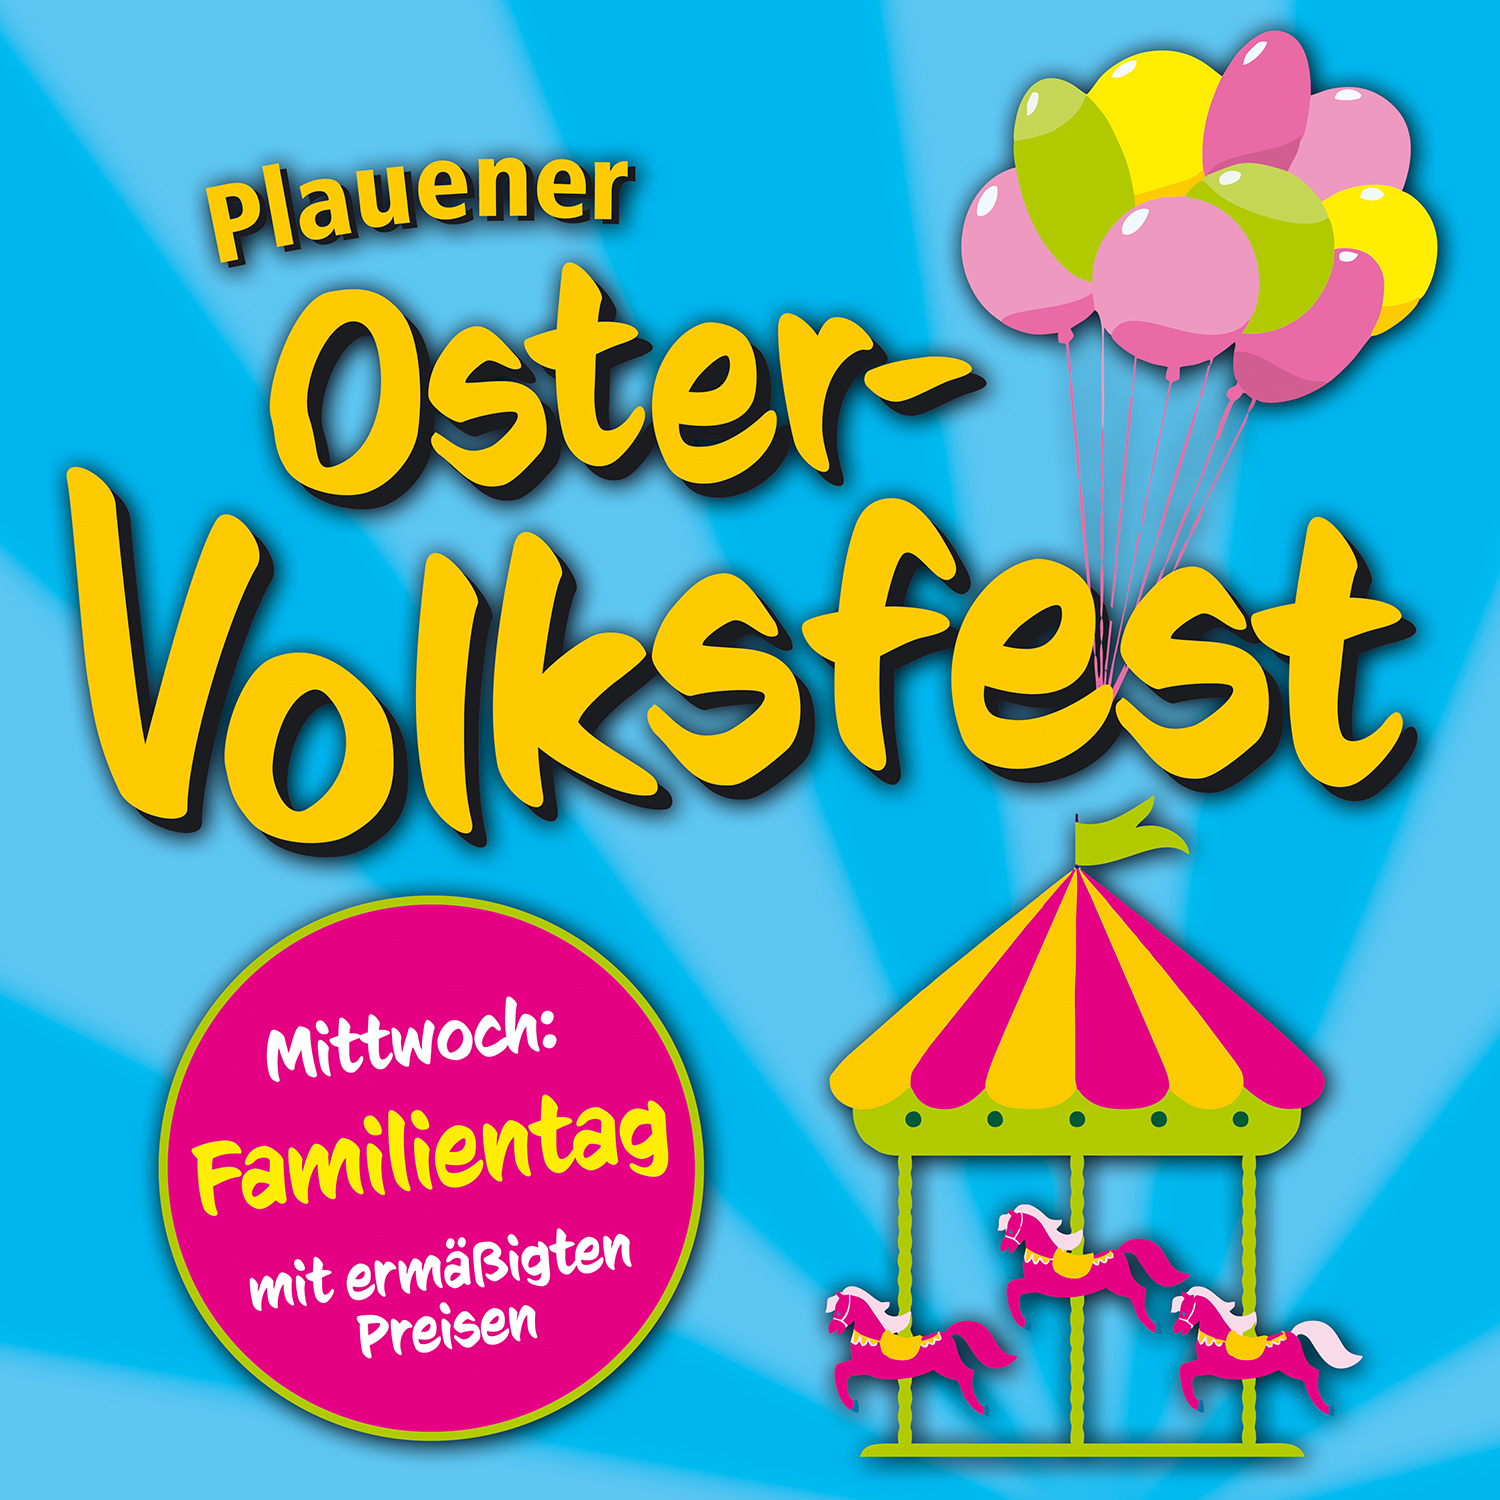 Plauener Oster-Volksfest 